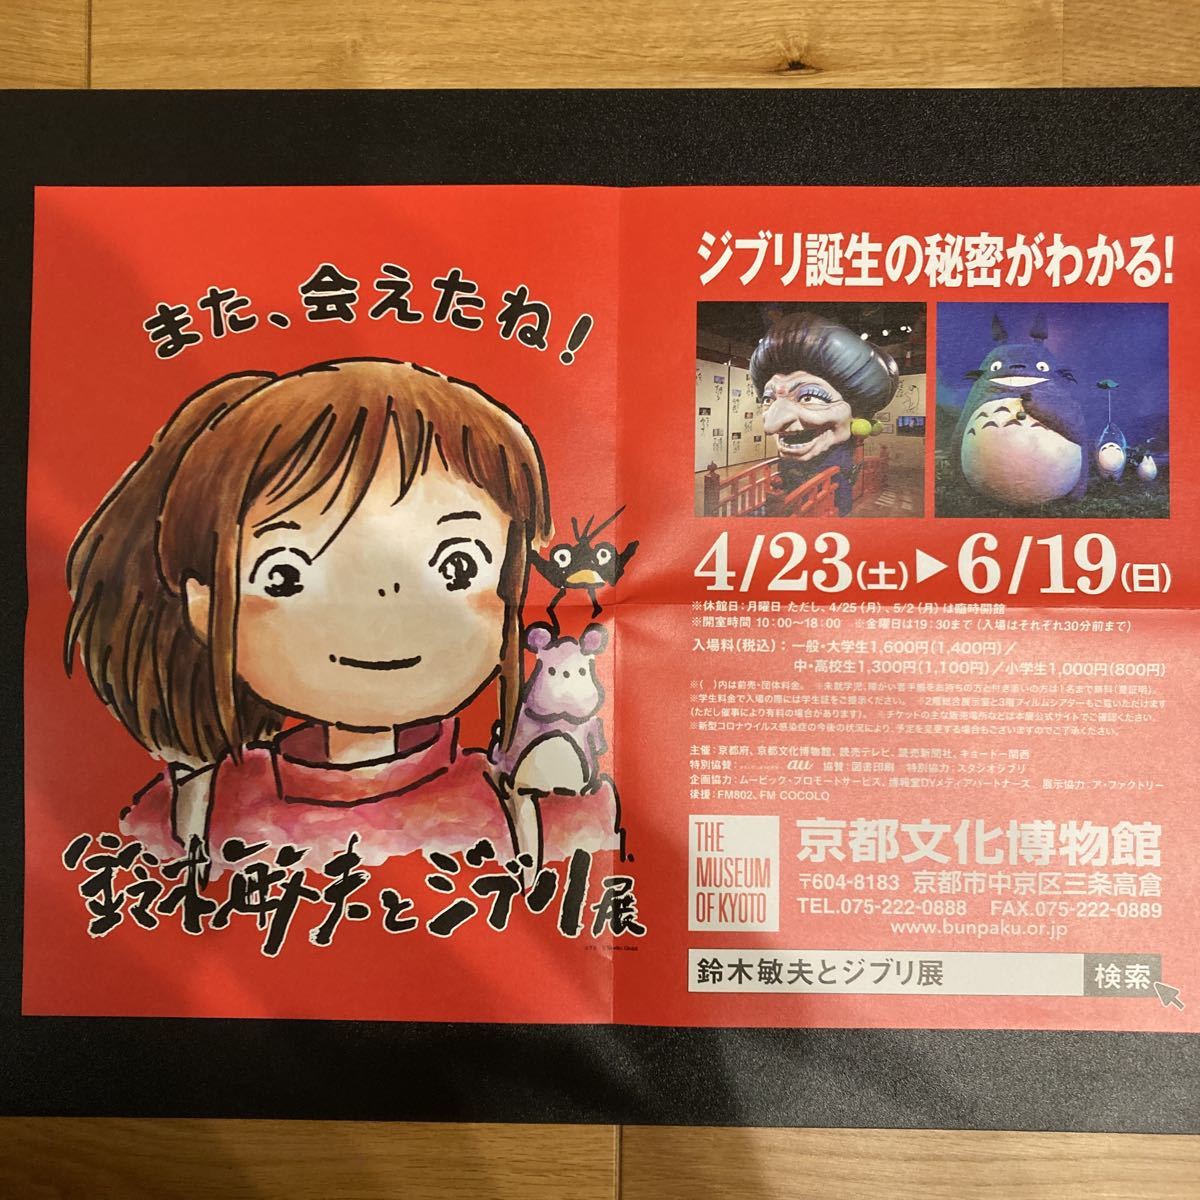 2022 год открытие Event [ Suzuki . Хара . Ghibli выставка ] Kyoto версия постер тысяч . тысяч .. бог ..